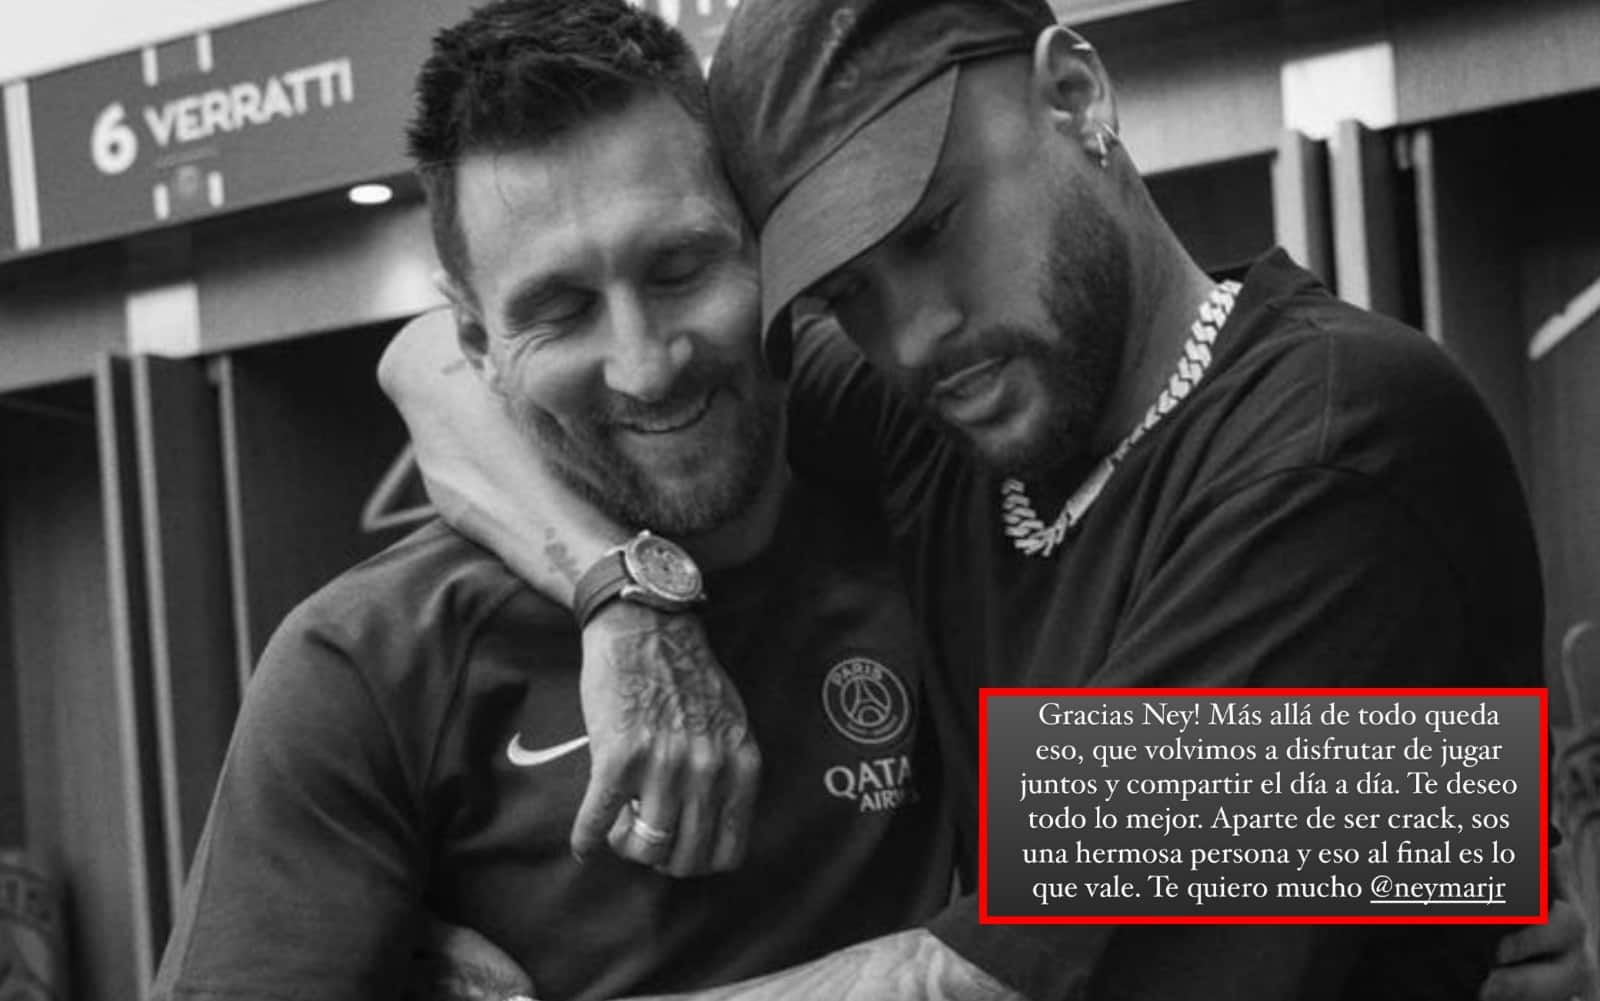 Neymar saluta Messi su Instagram: "Che tu sia felice", e la Pulce risponde…